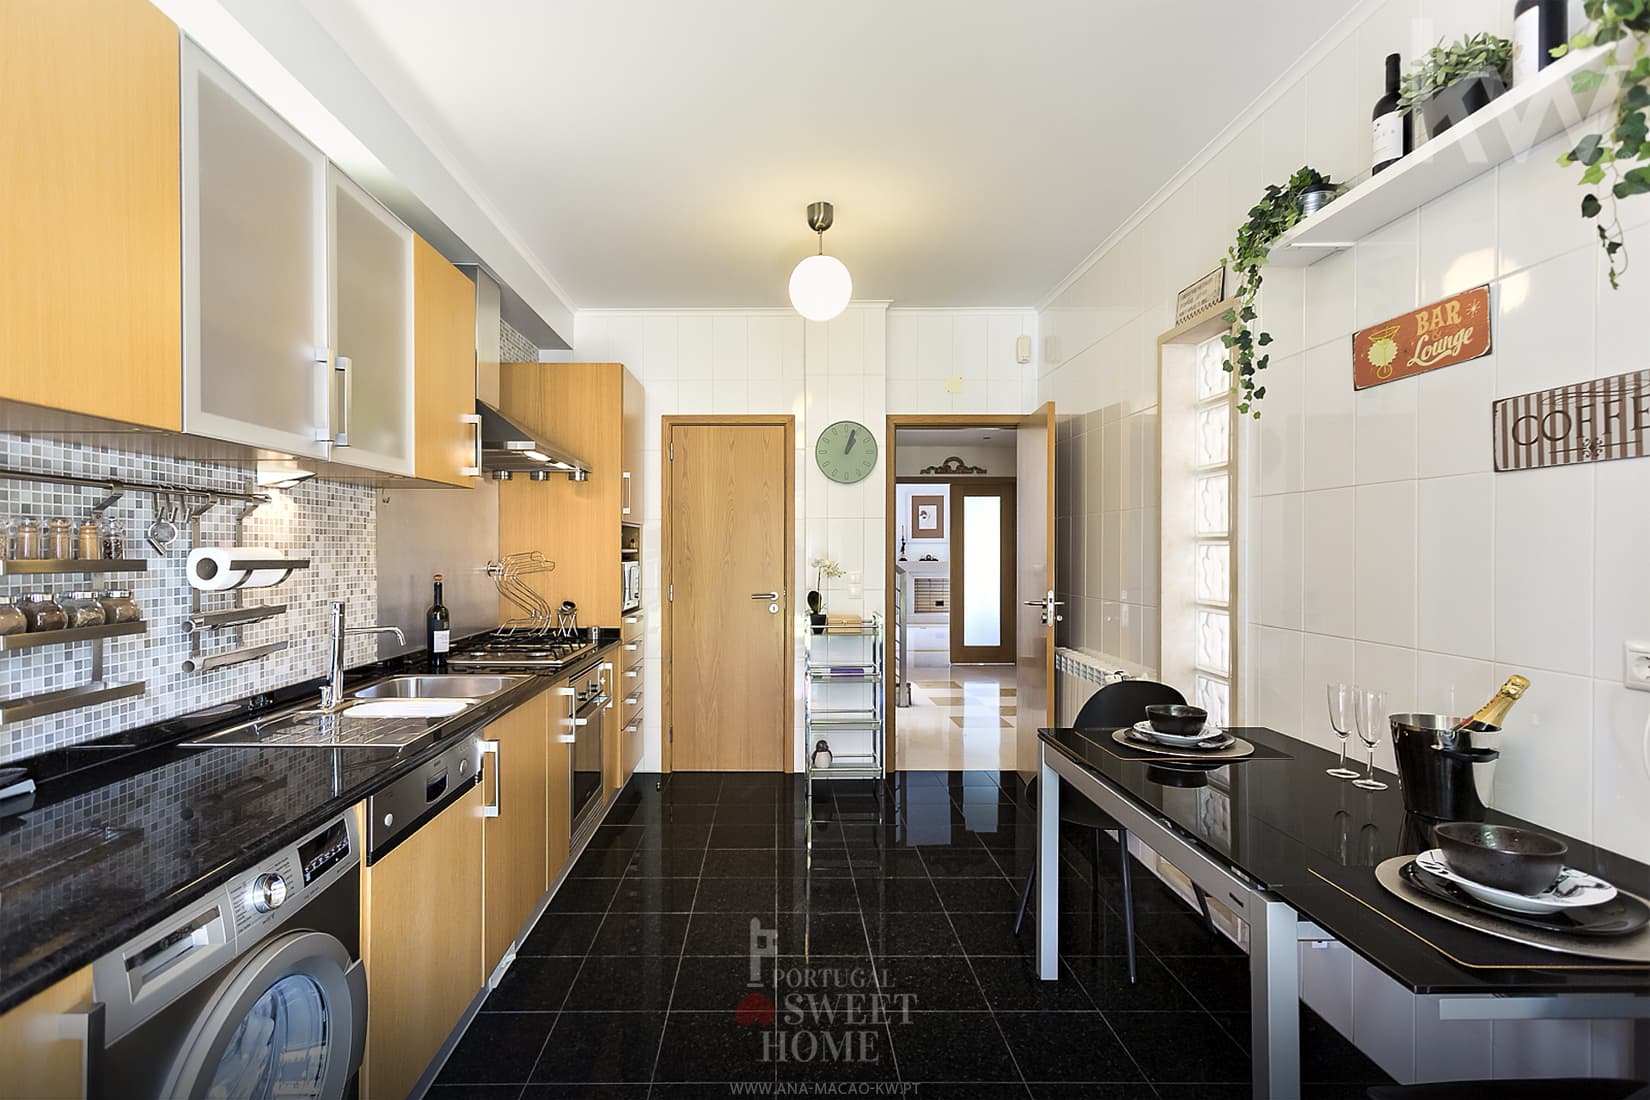 Cozinha (14,75 m²) totalmente equipada (eletrodomésticos BOSH) e mobilada 